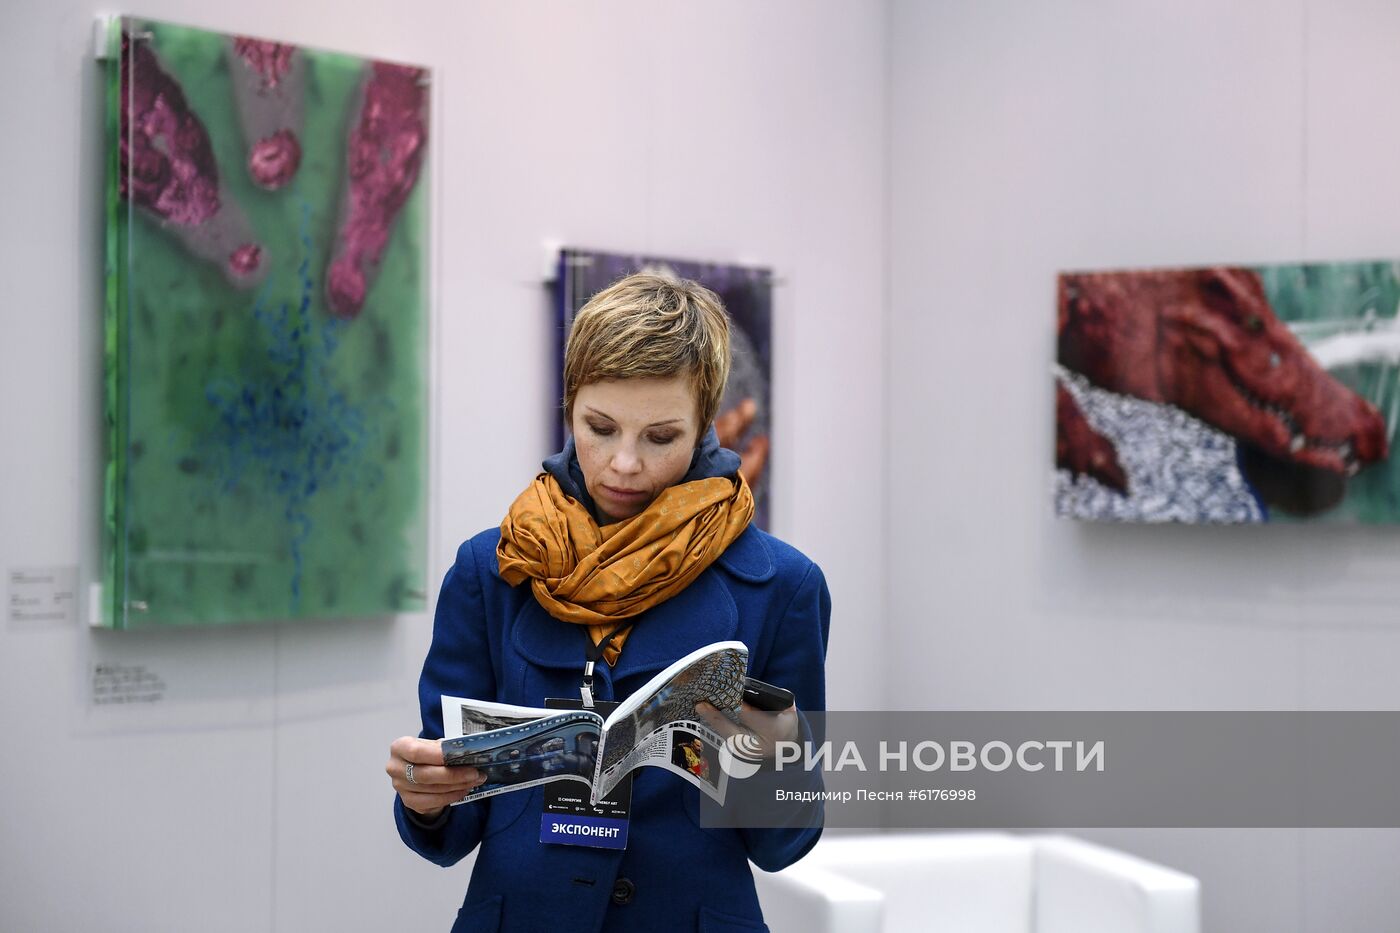 Ярмарка современного искусства Art Russia 